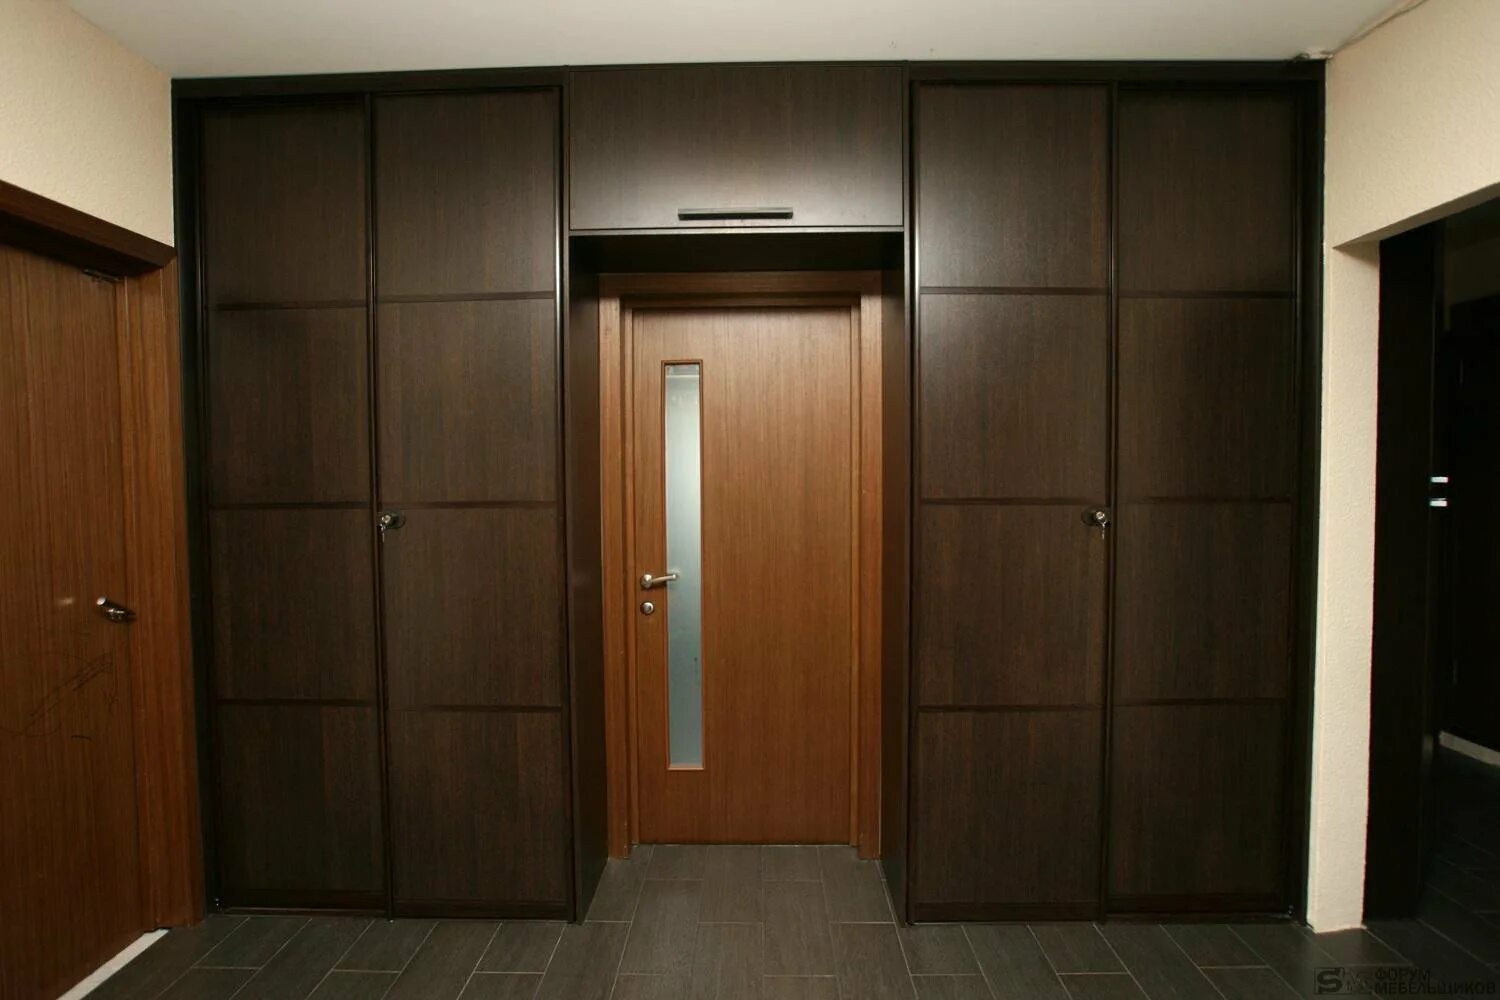 Дверь посередине. Прихожая с антресолями и шкафом. Встроенные шкафы вокруг двери. Встроенный шкаф с входной дверью. Шкаф в прихожую.